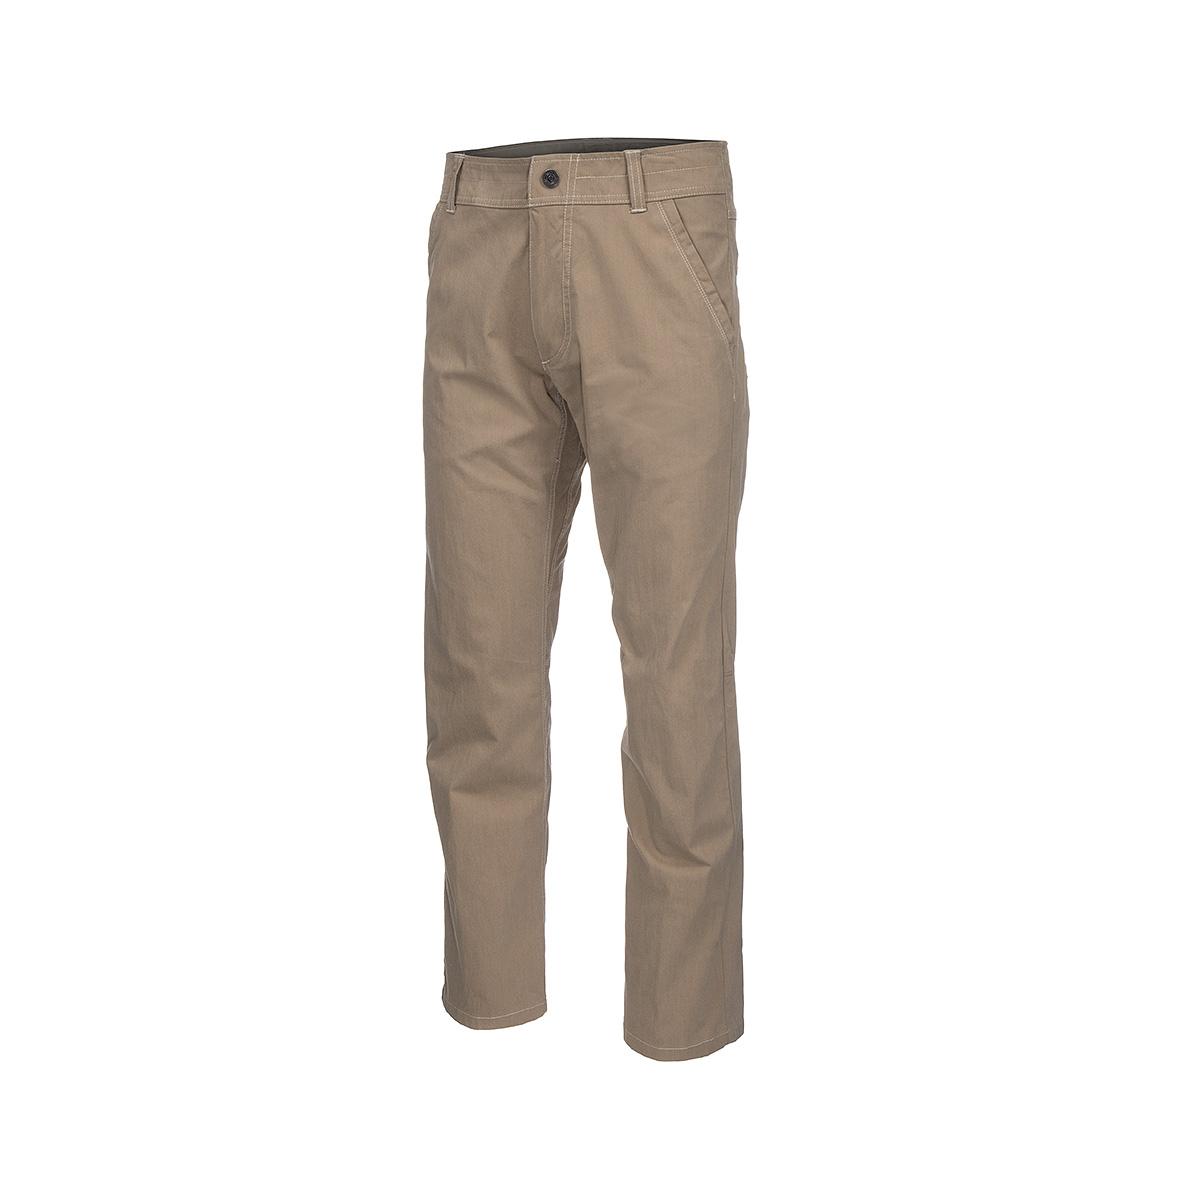 Mast General Store | Men's Slax Pants